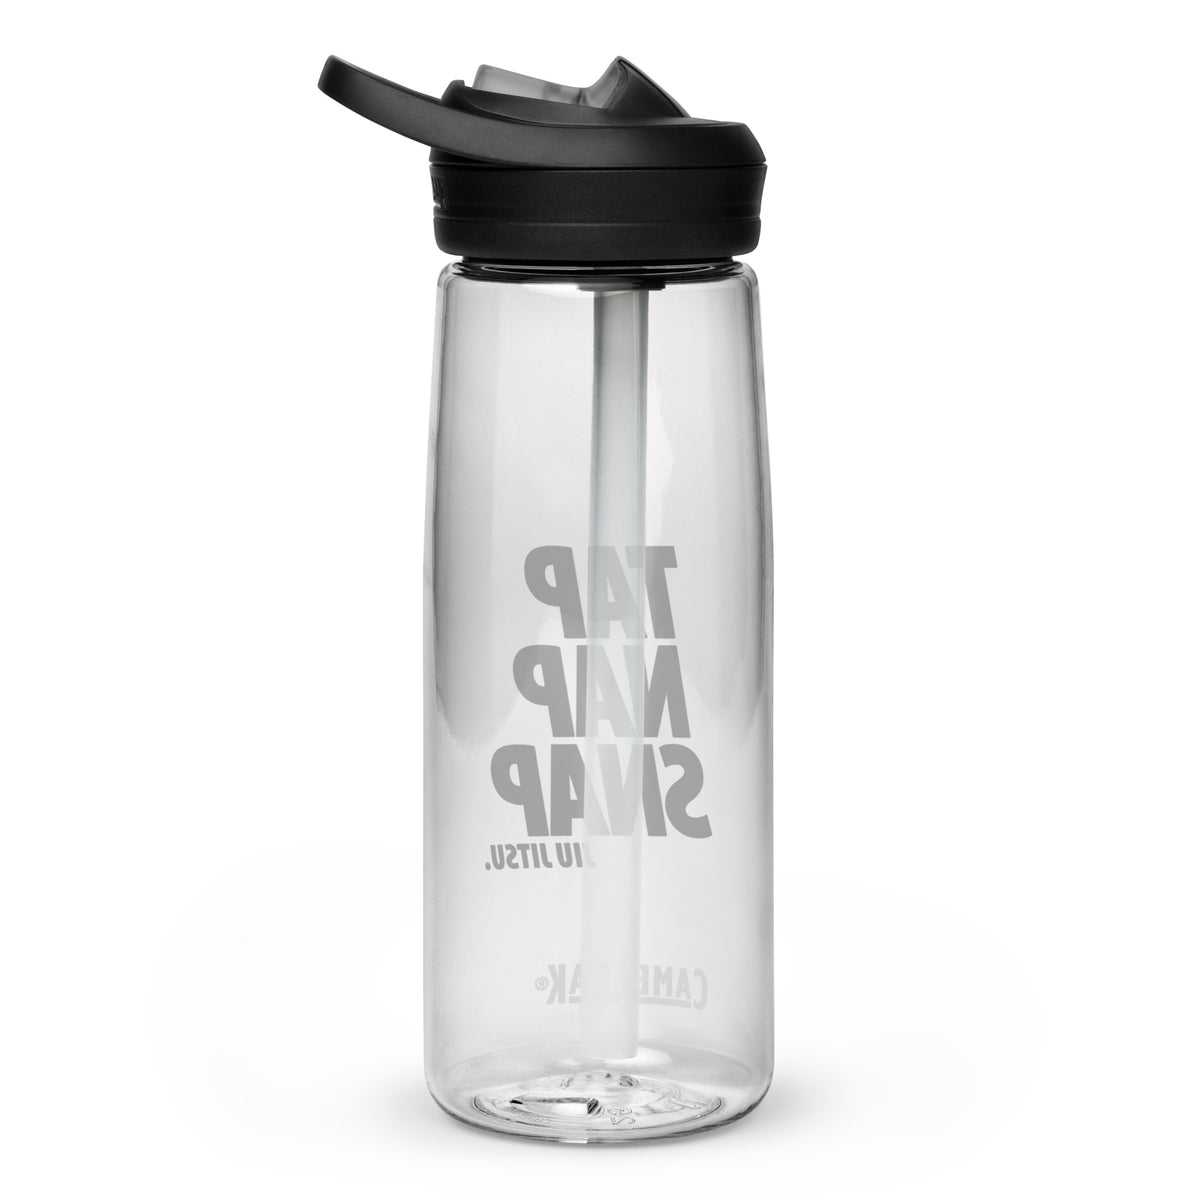 Tap Nap Snap White Eco-Friendly BJJ Sport Bottle